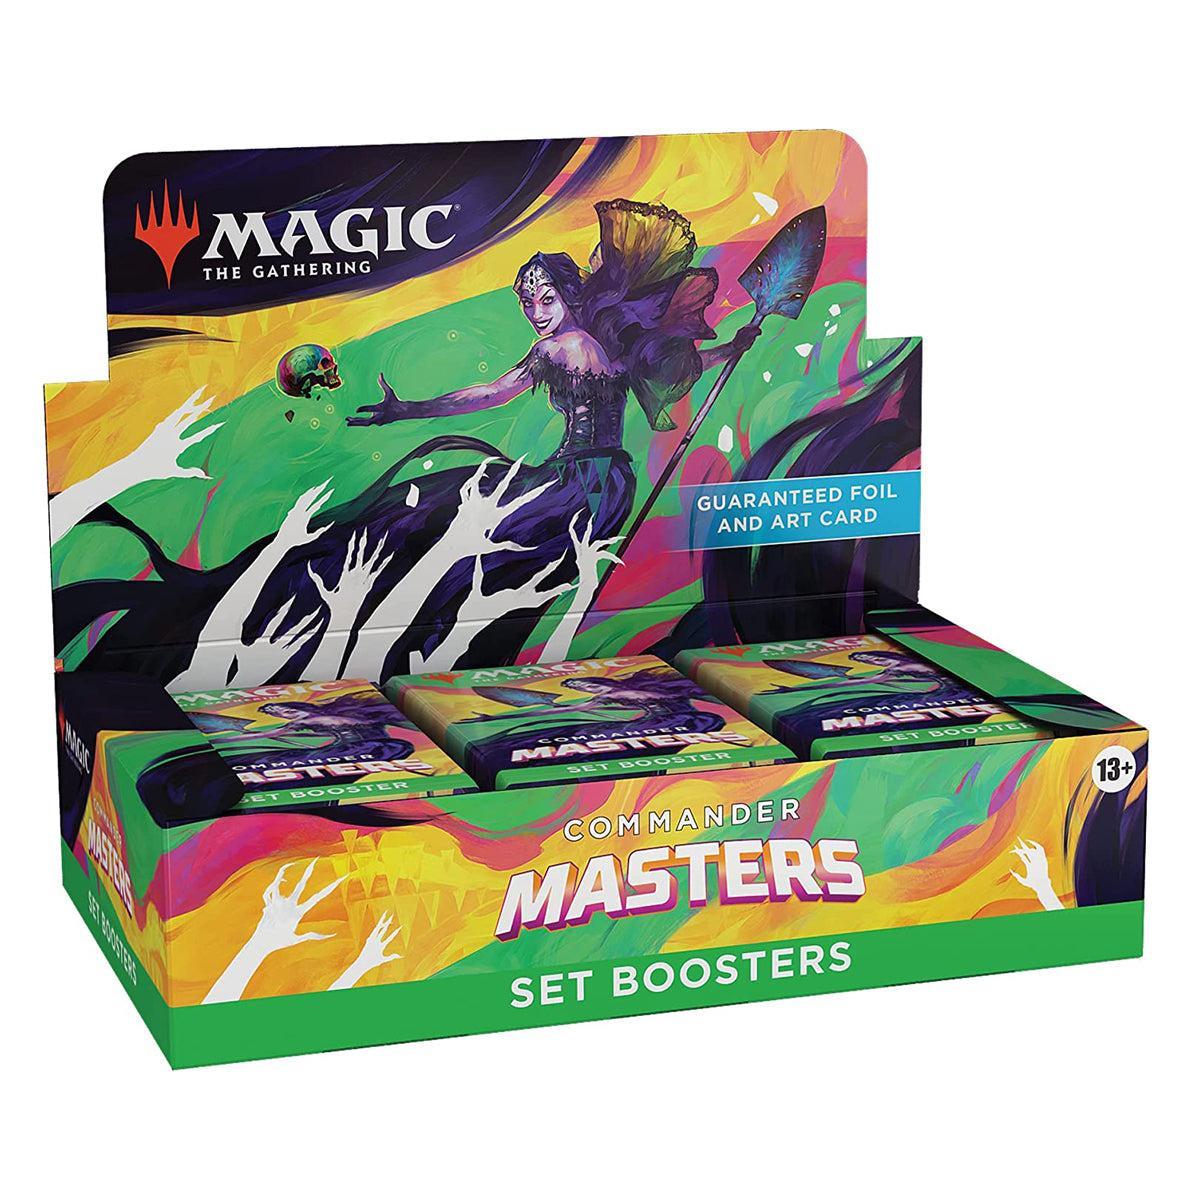 Magic Commander Masters Set Booster Box